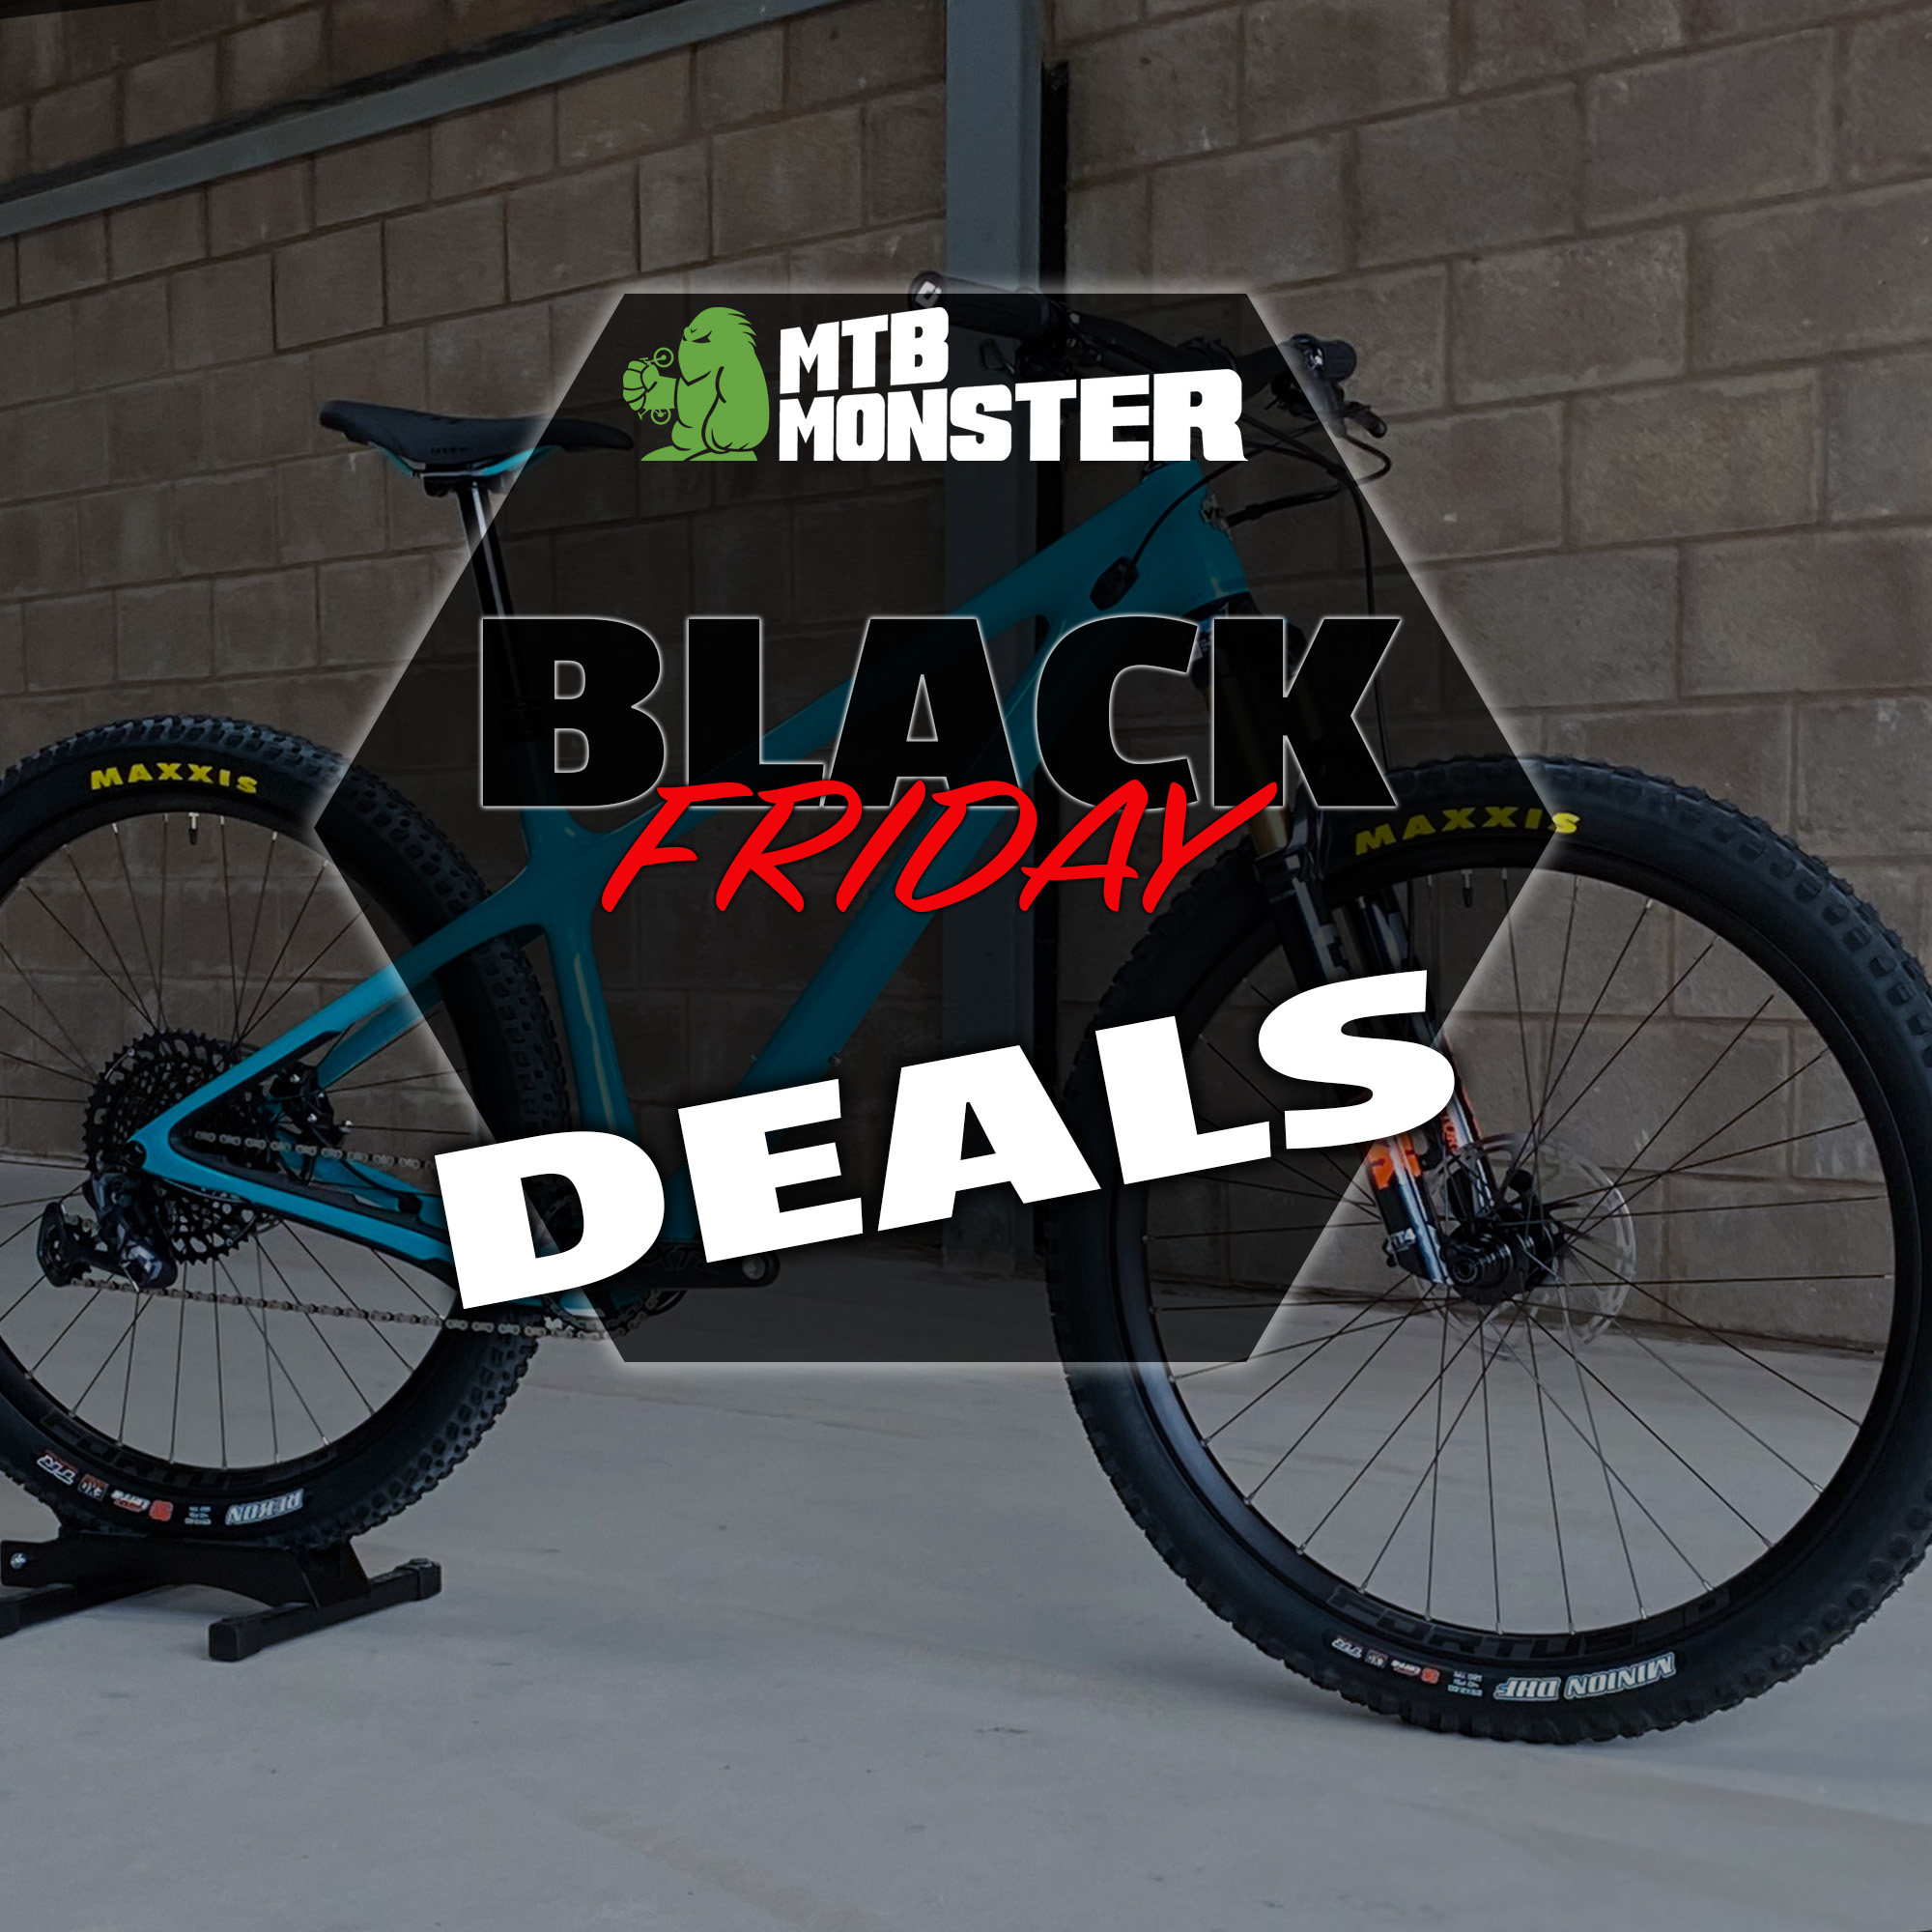 Black Friday Deals at MTB Monster